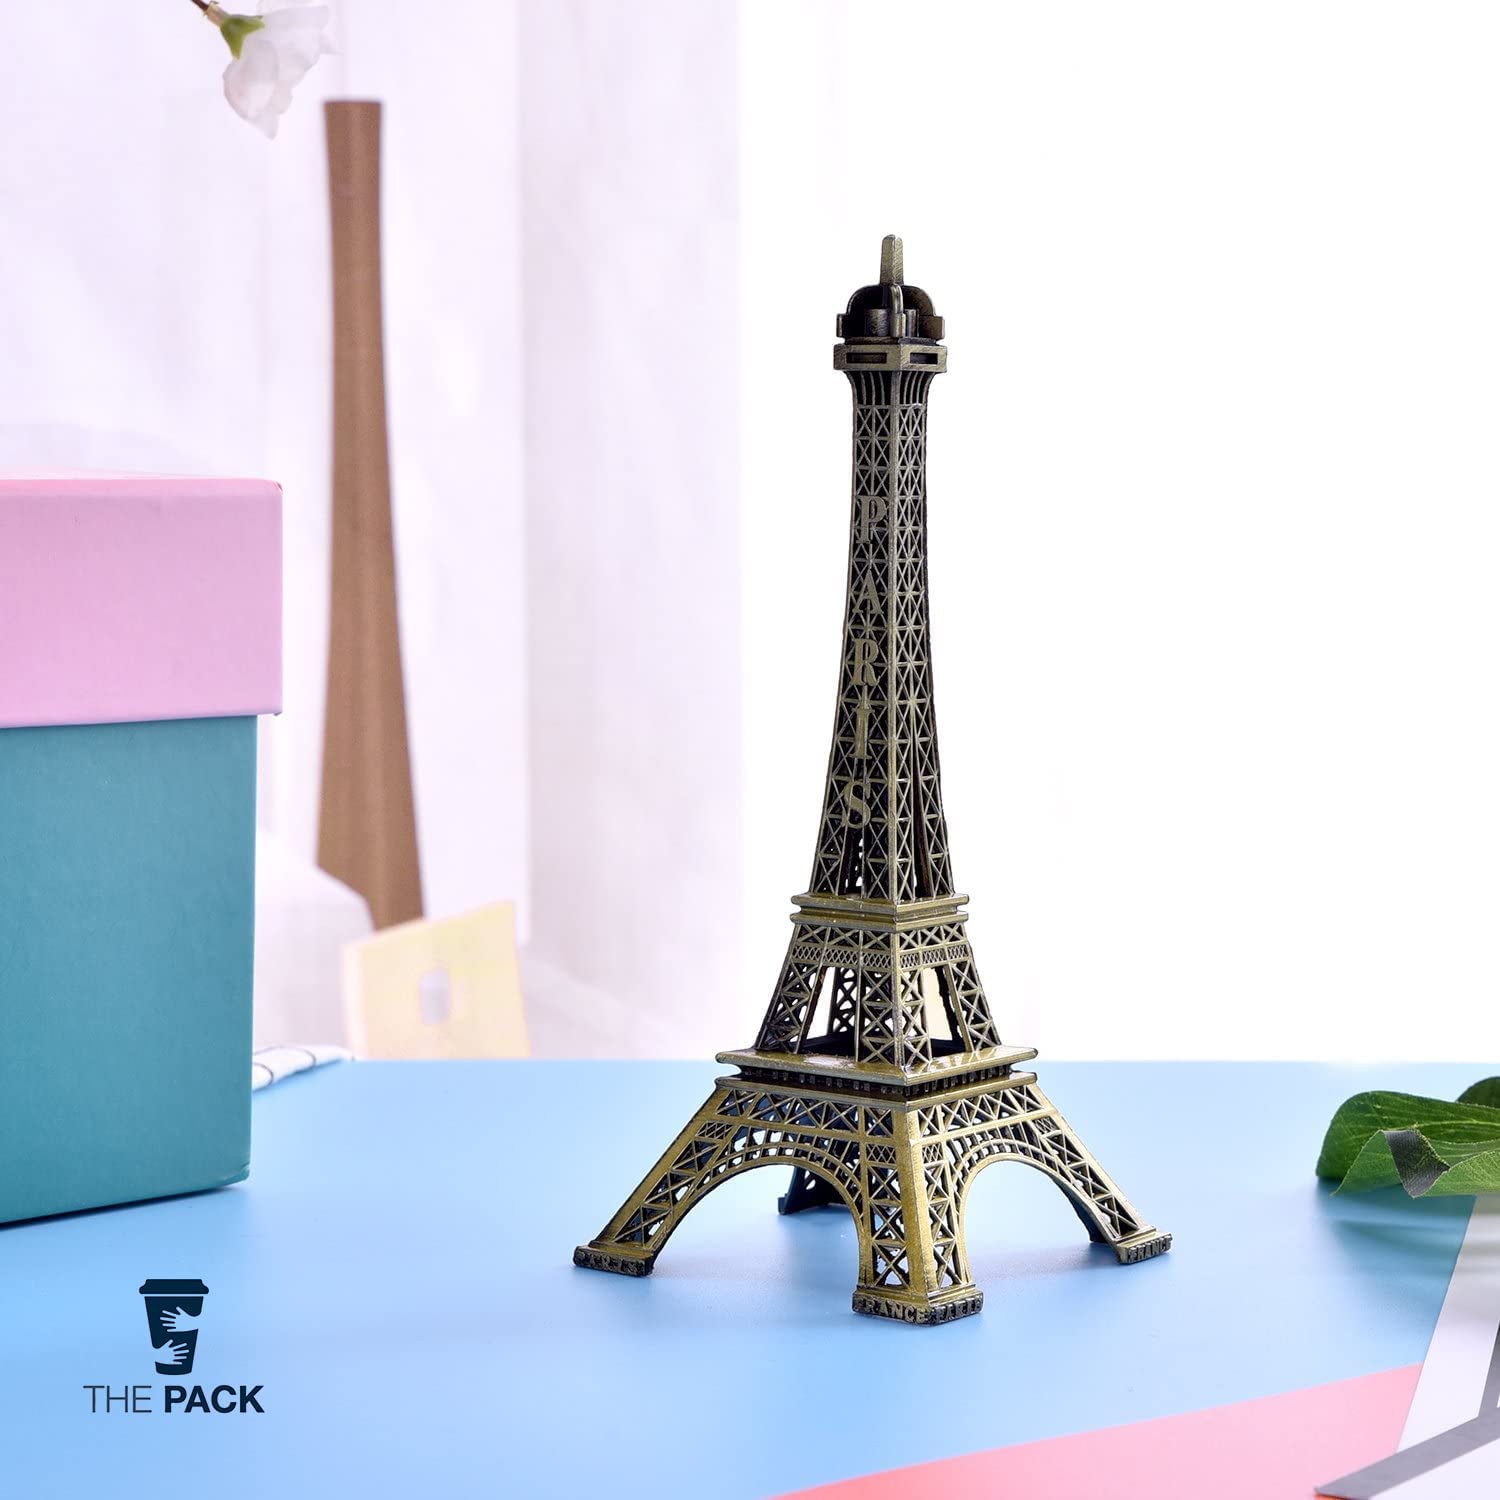 ديكور برج إيفيل من بحجم (8 سم) تمثال معدني لبرج إيفيل باريس تمثال نصفي طبق الأصل لغرفة الرسم وطاولة ديكور وحامل مجوهرات ( 3.5 ×8 سم)